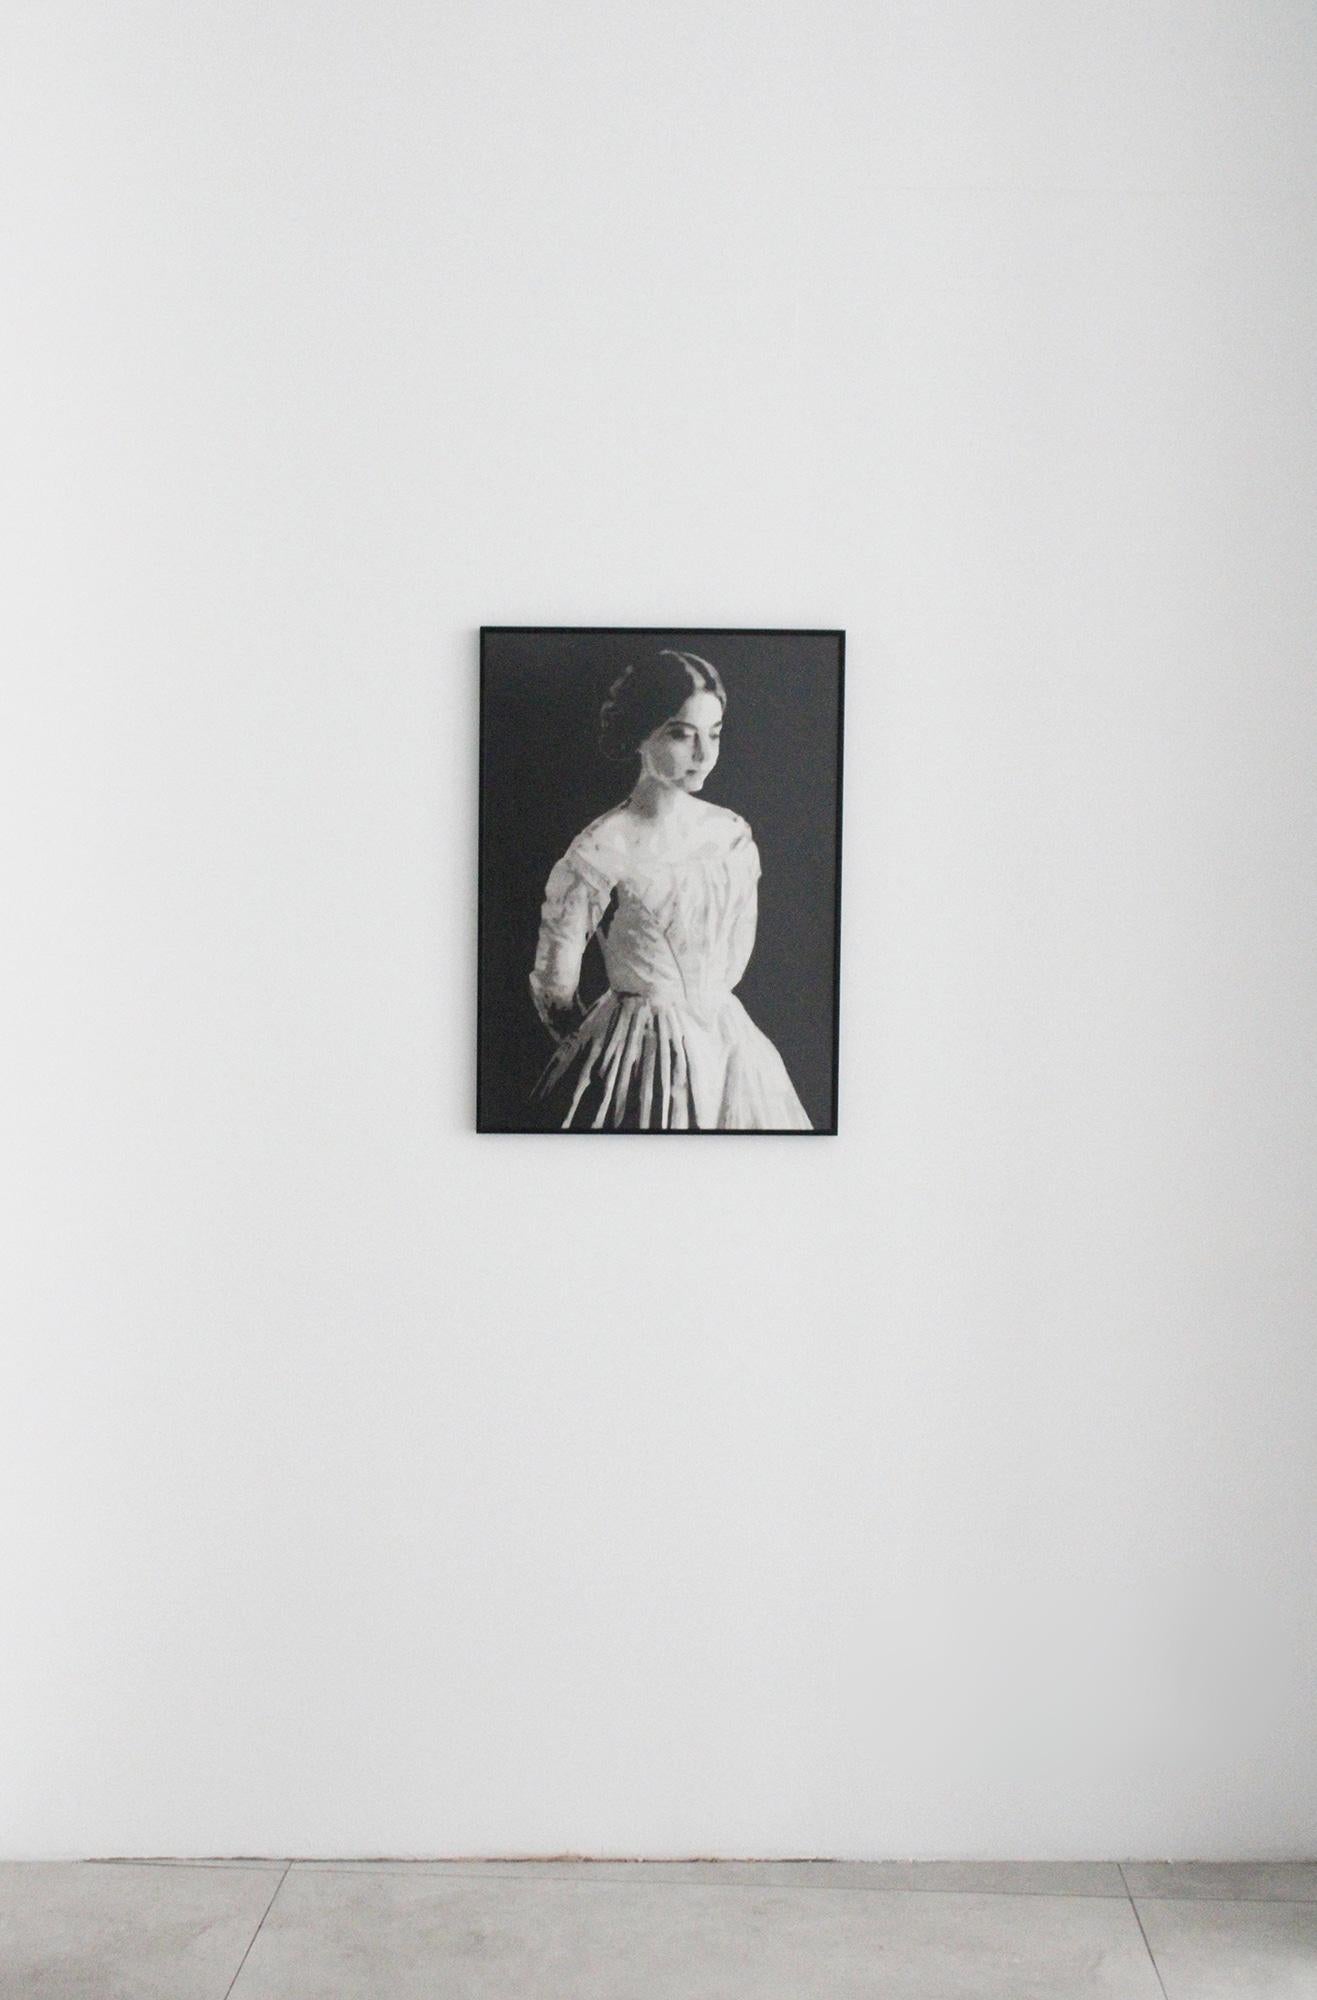 Meditations on Fragility (3) by J. Delagrange - work on paper, black & white - Contemporary Art by Julien Delagrange